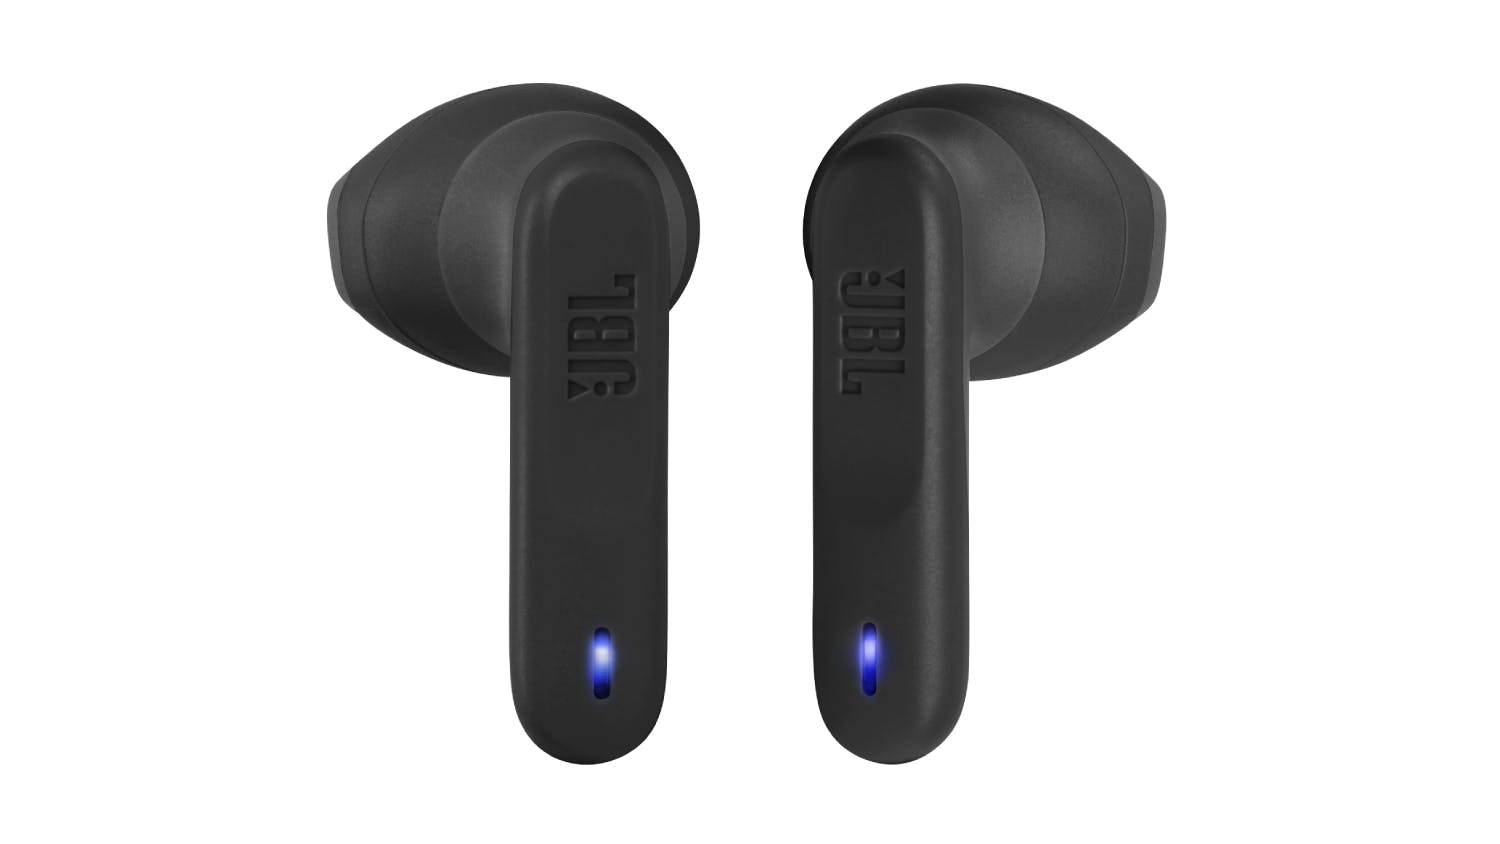 JBL Wave Flex True Wireless In-Ear Headphones - Black